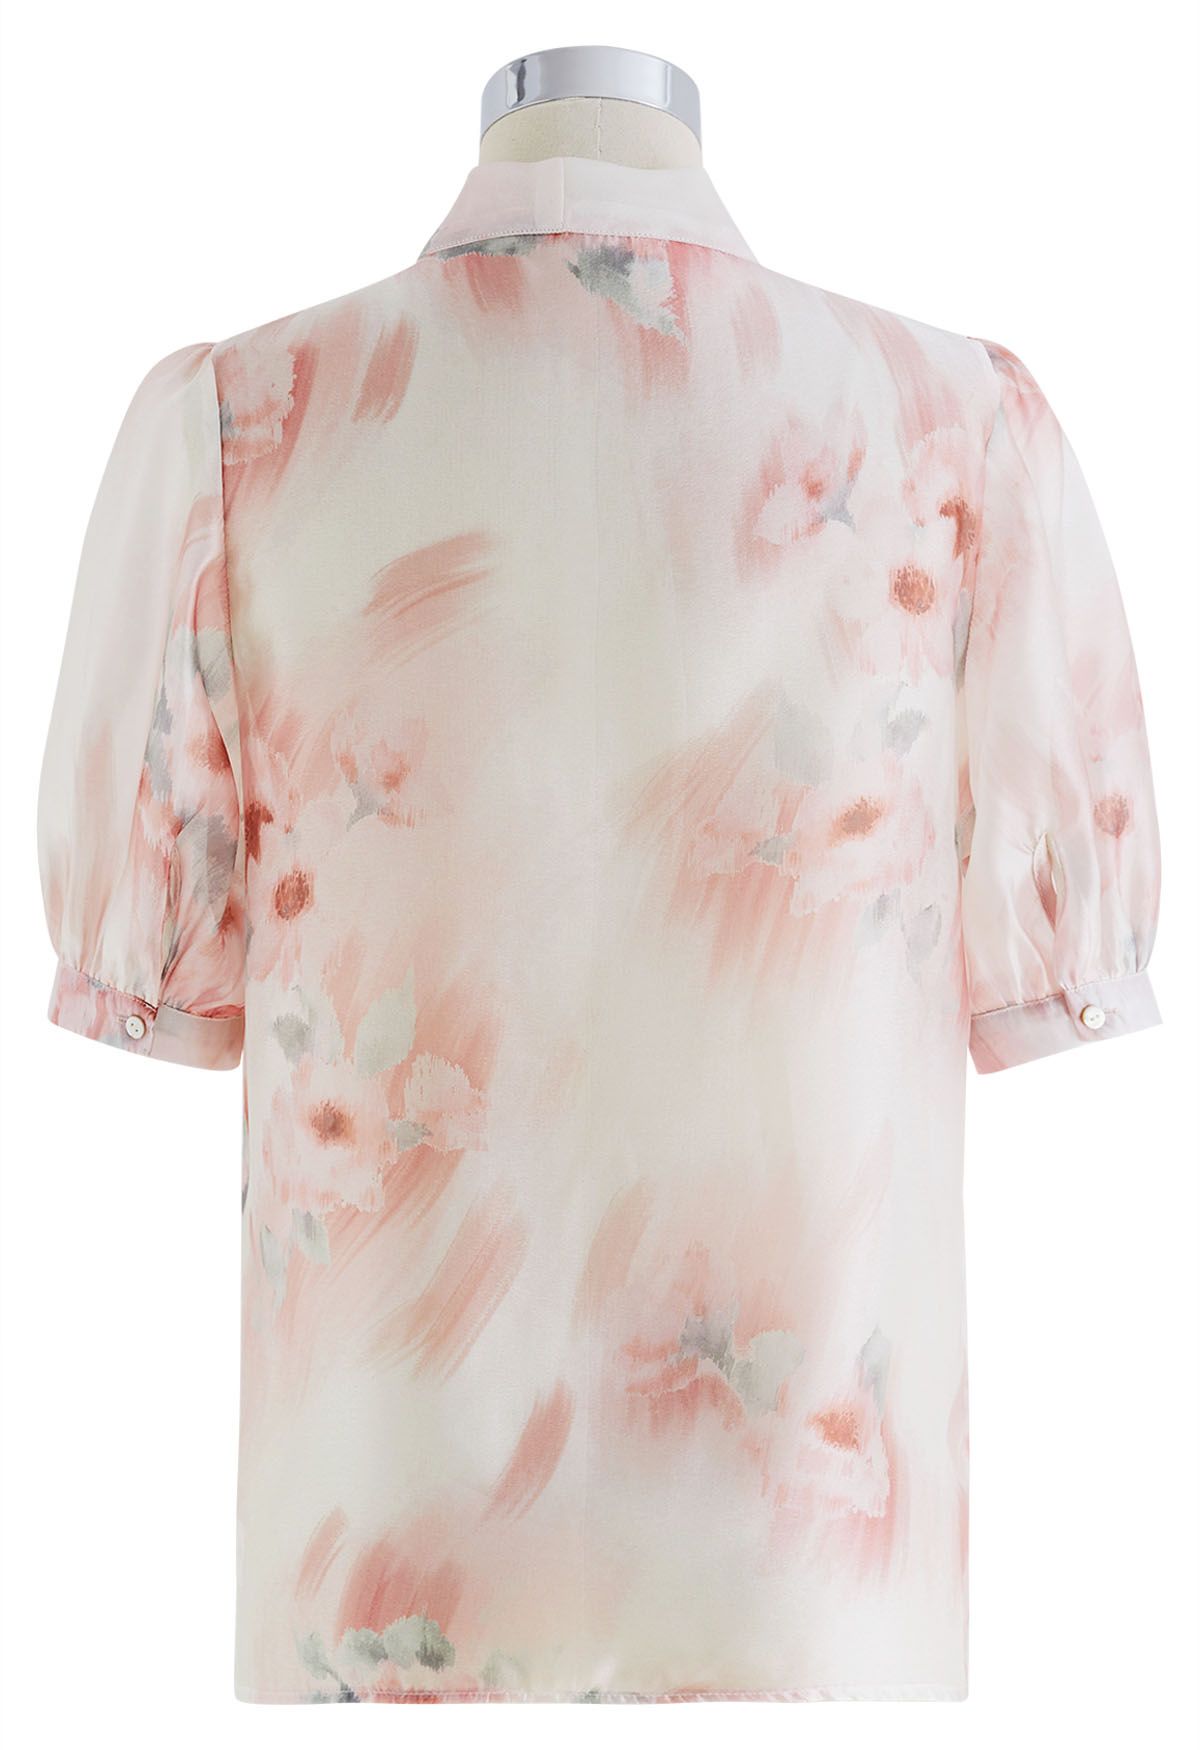 Camisa transparente con lazo floral acuarela en coral